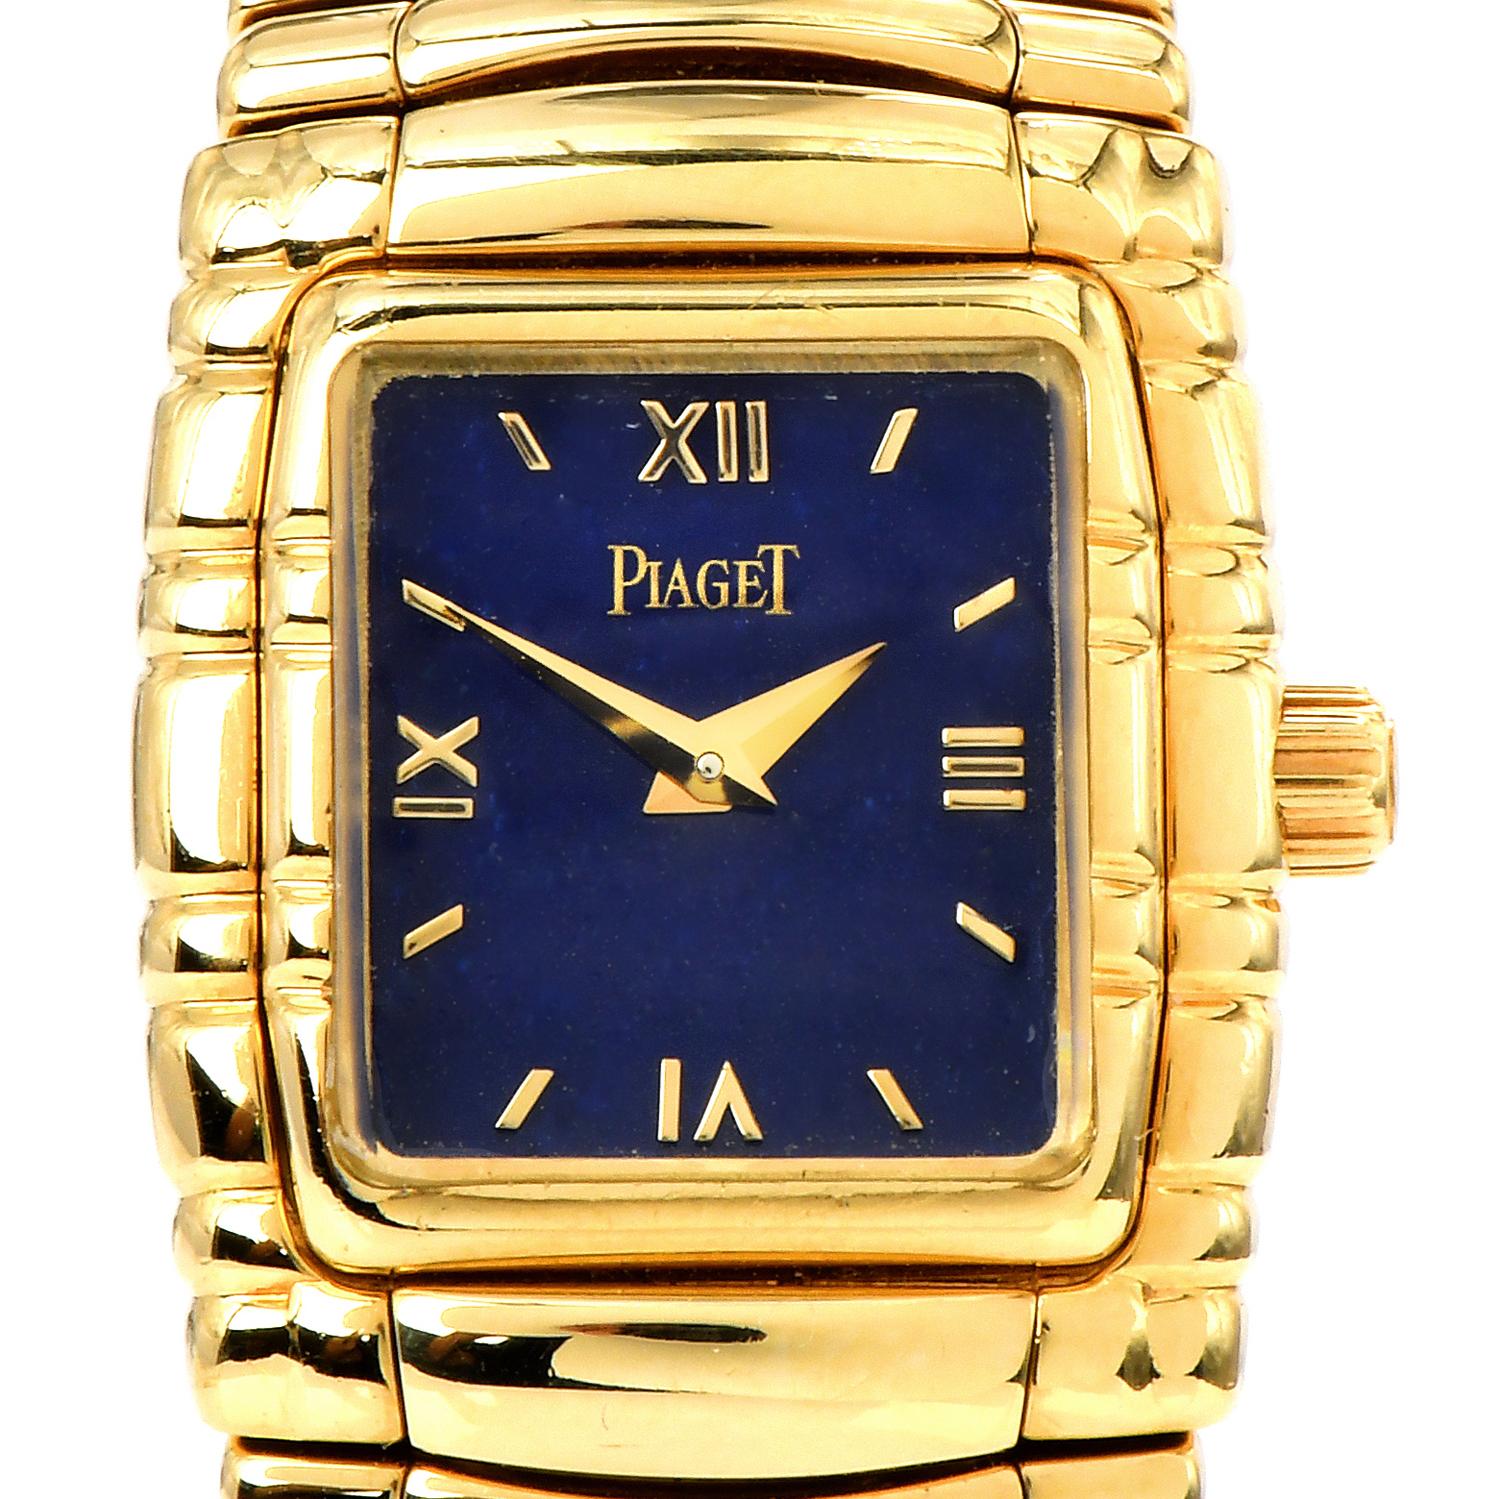 Piaget Tanagra, Ref. 16051 M 401 D.

Diese Uhr aus dem Jahr 1990 besteht aus massivem 18-karätigem Gelbgold und hat ein seltenes, echtes Lapis-Zifferblatt mit goldenen römischen Ziffern und Dauphine-Zeigern.

Diese Uhr ist ein Piaget